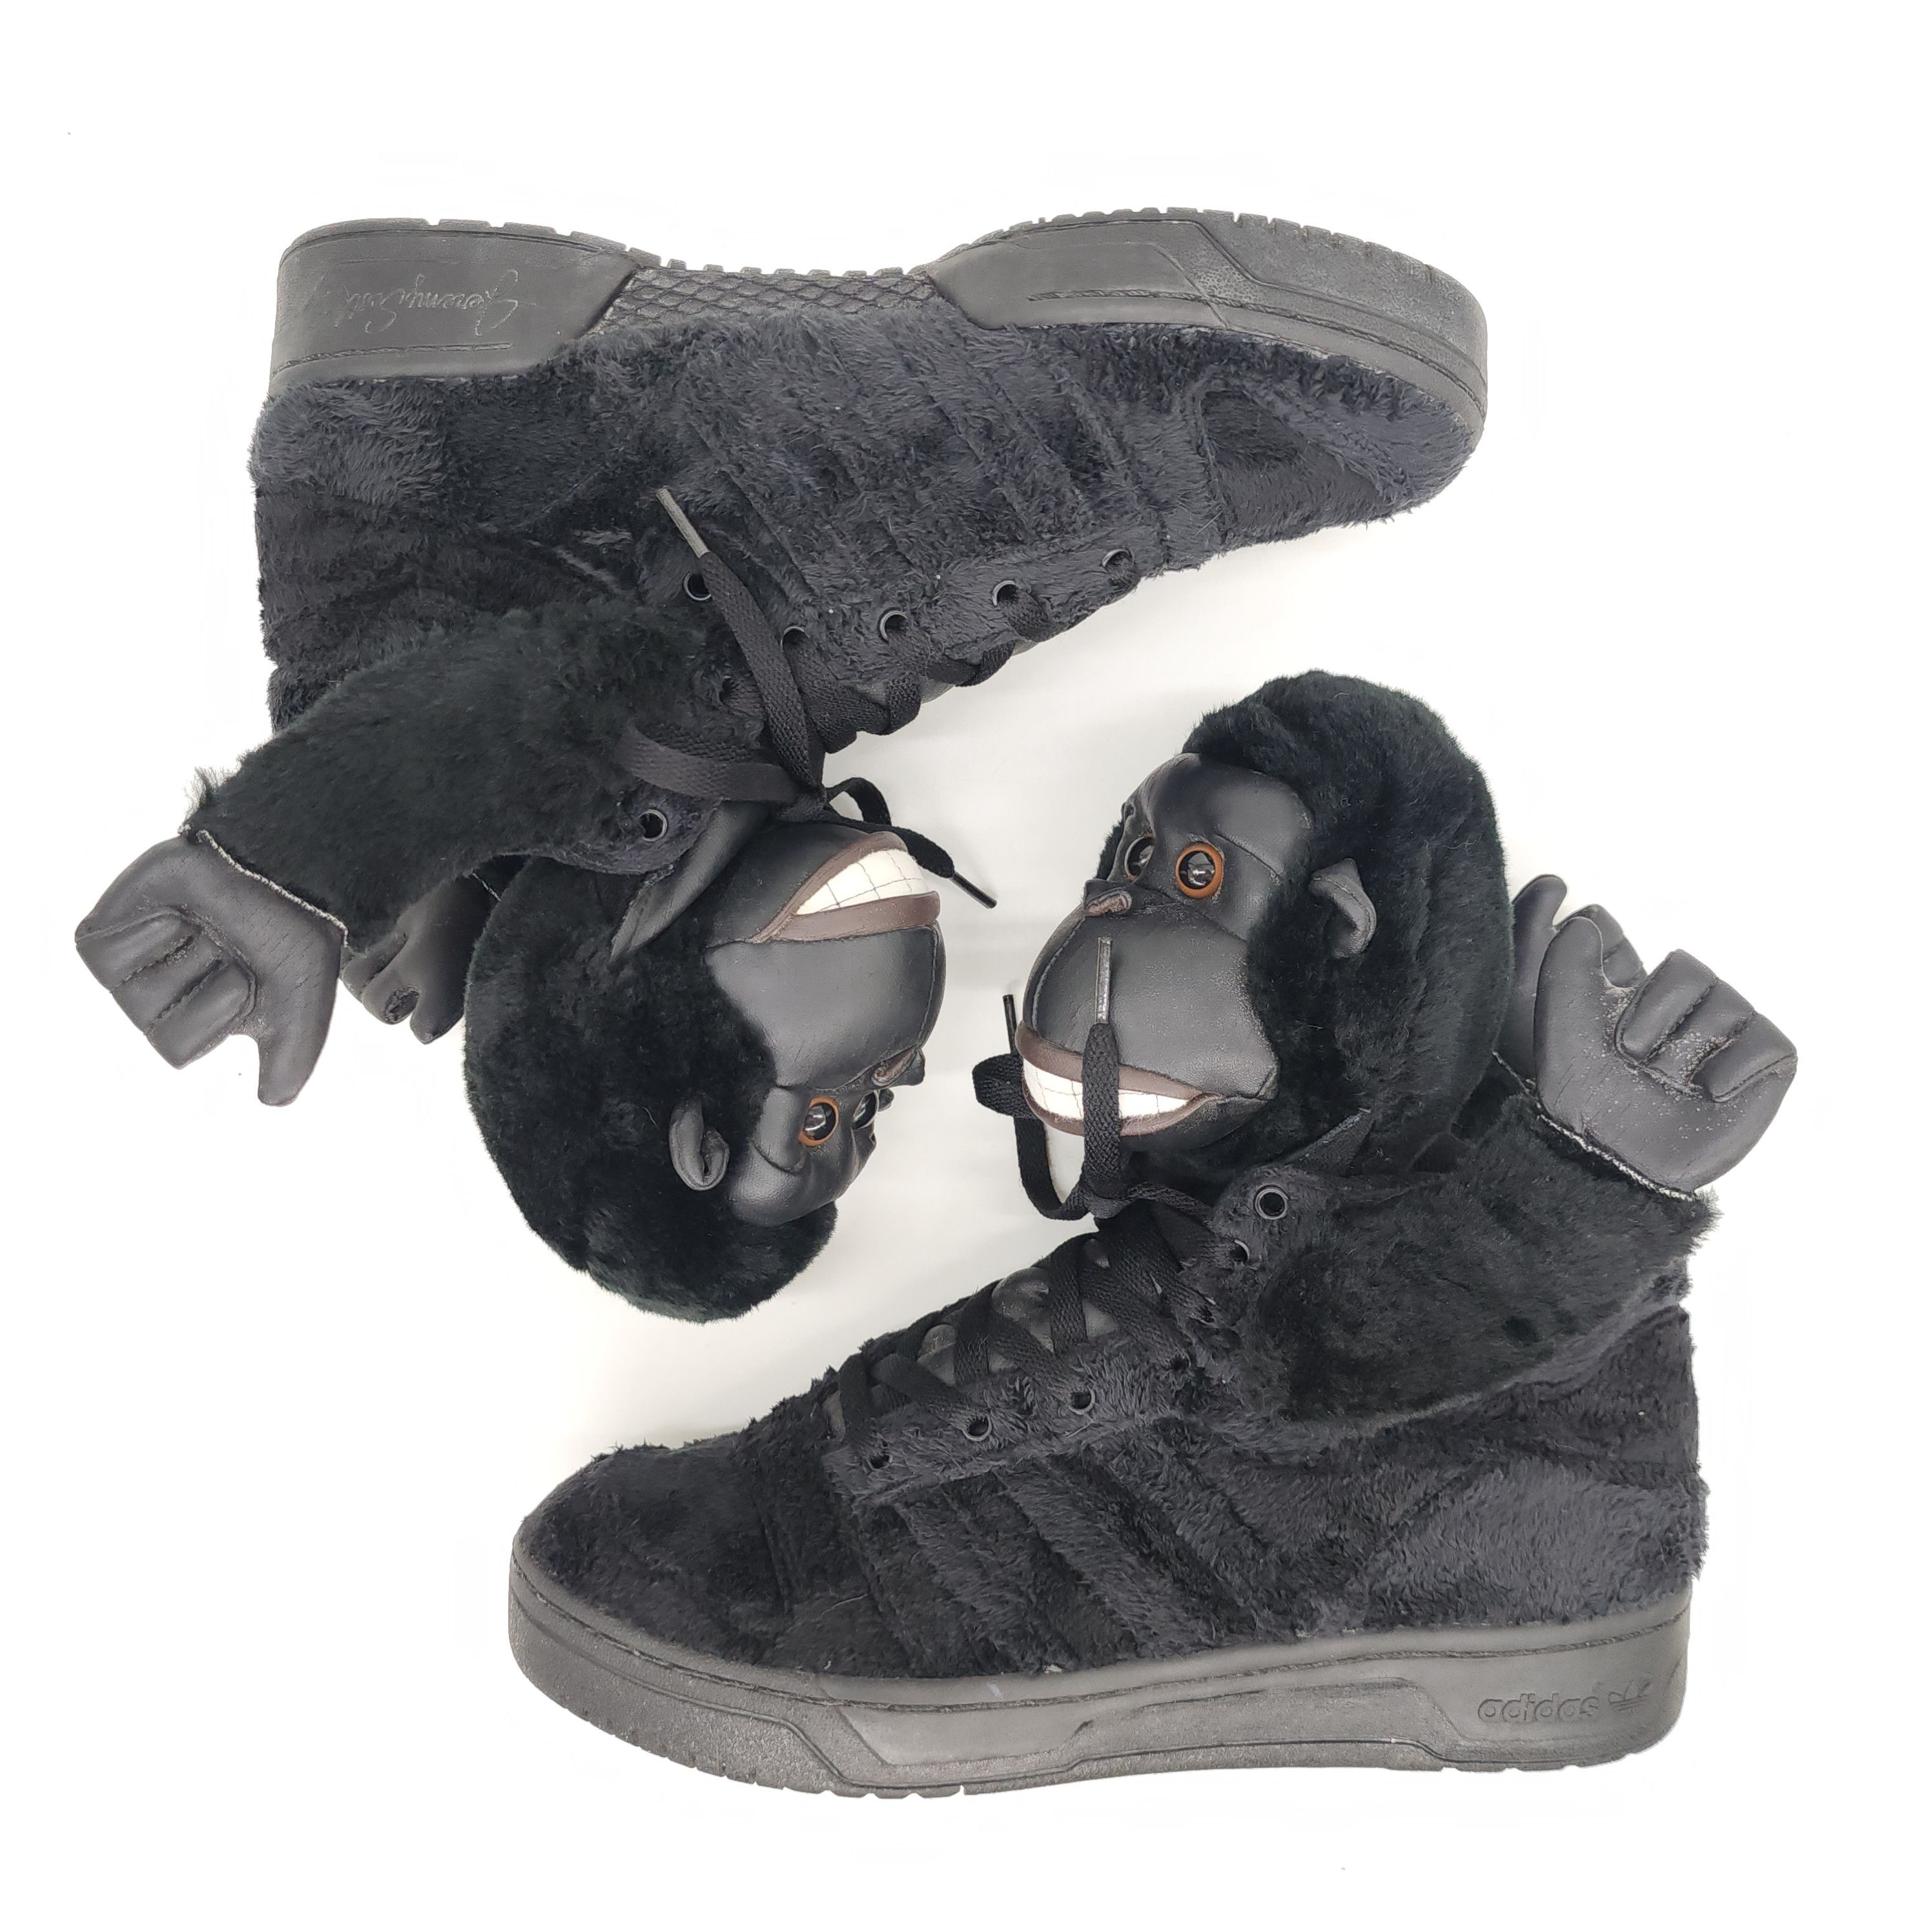 Adidas x Jeremy Scott - Gorilla Sneakers "2 Chainz" - 6